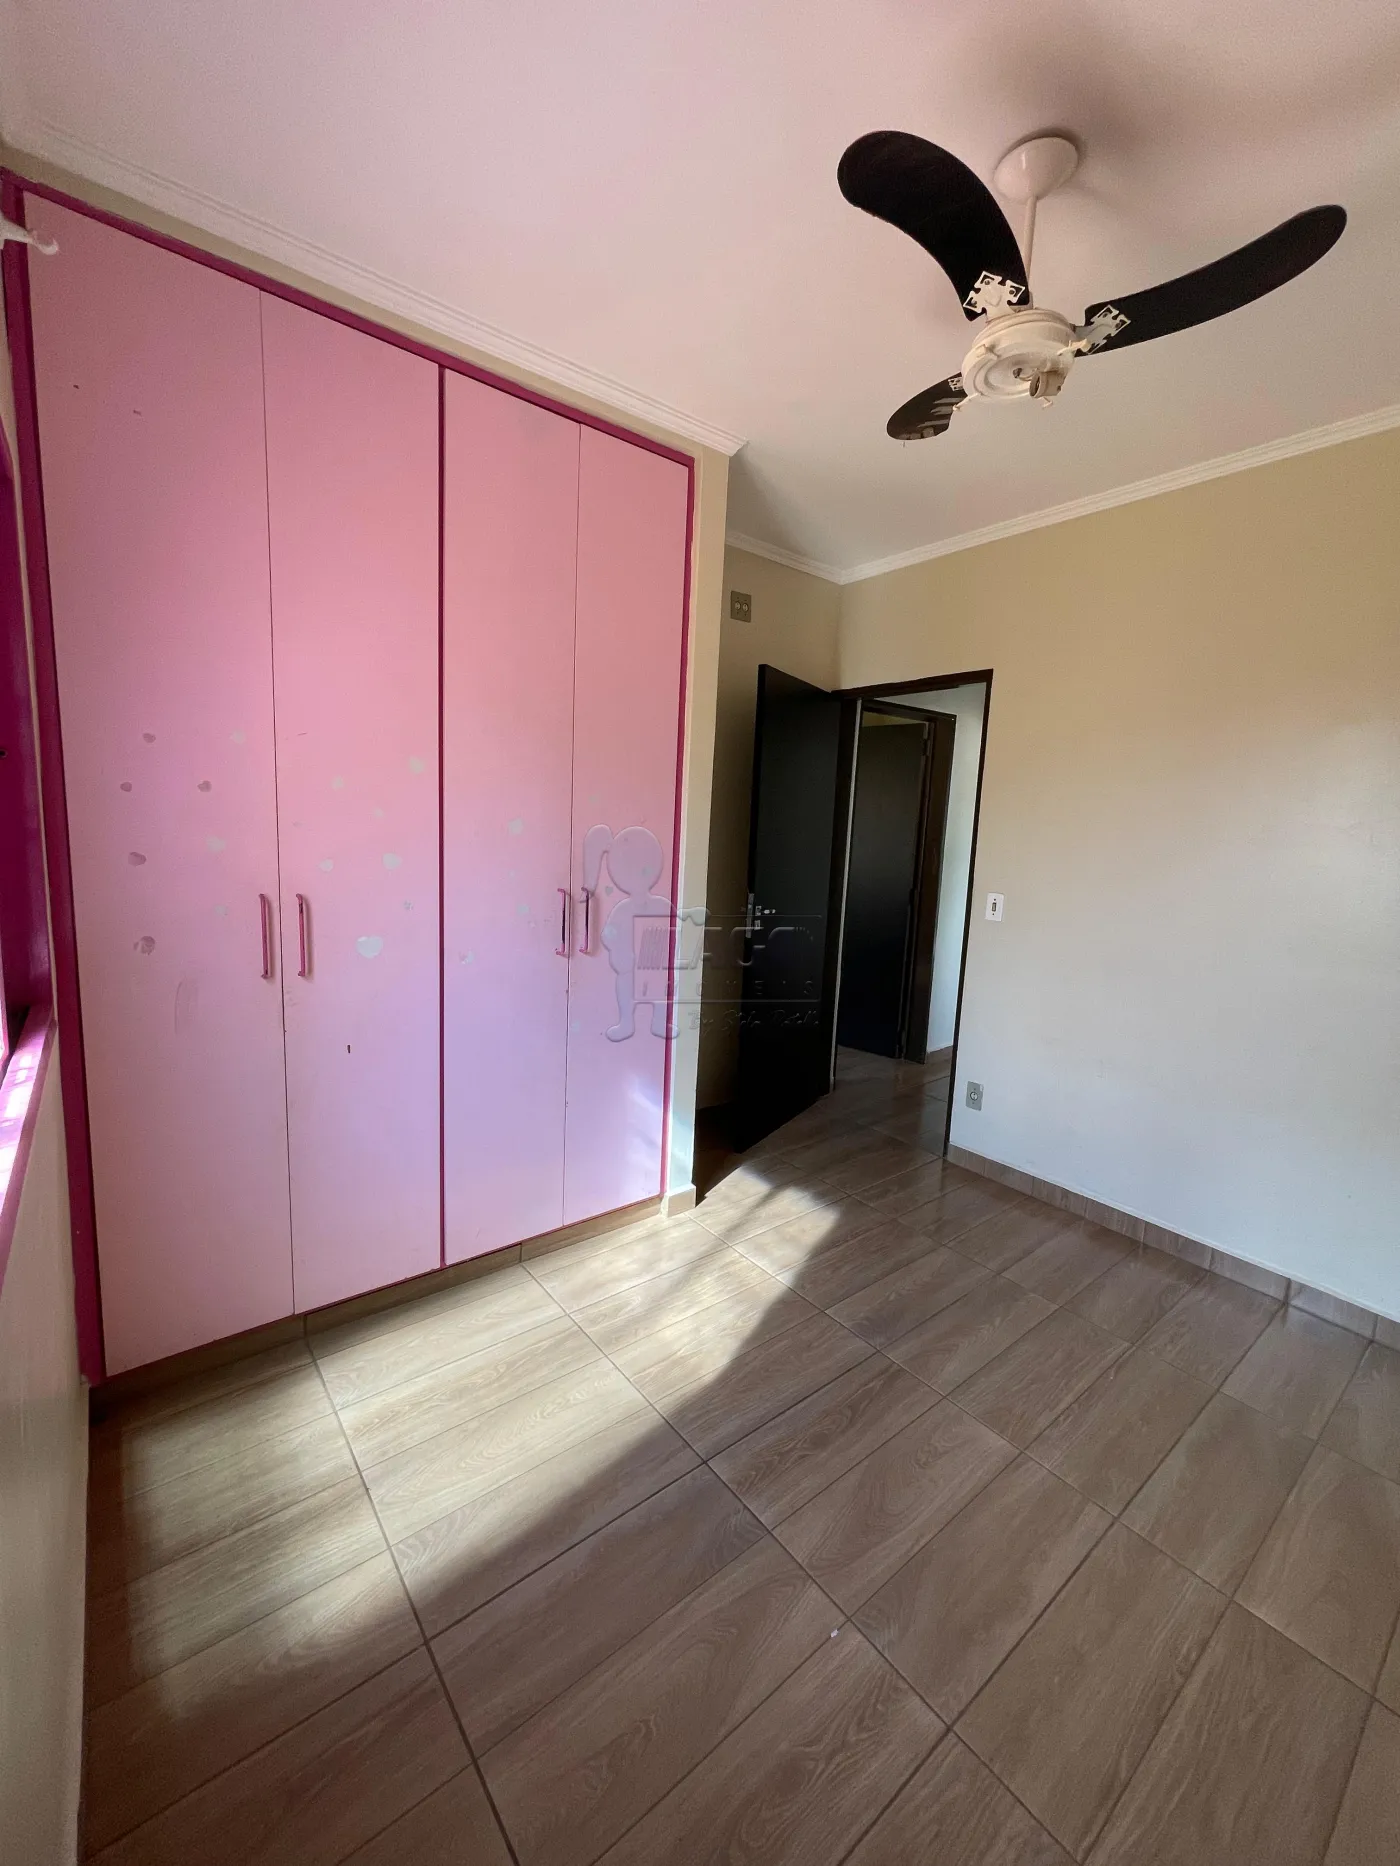 Comprar Apartamento / Padrão em Ribeirão Preto R$ 130.000,00 - Foto 8